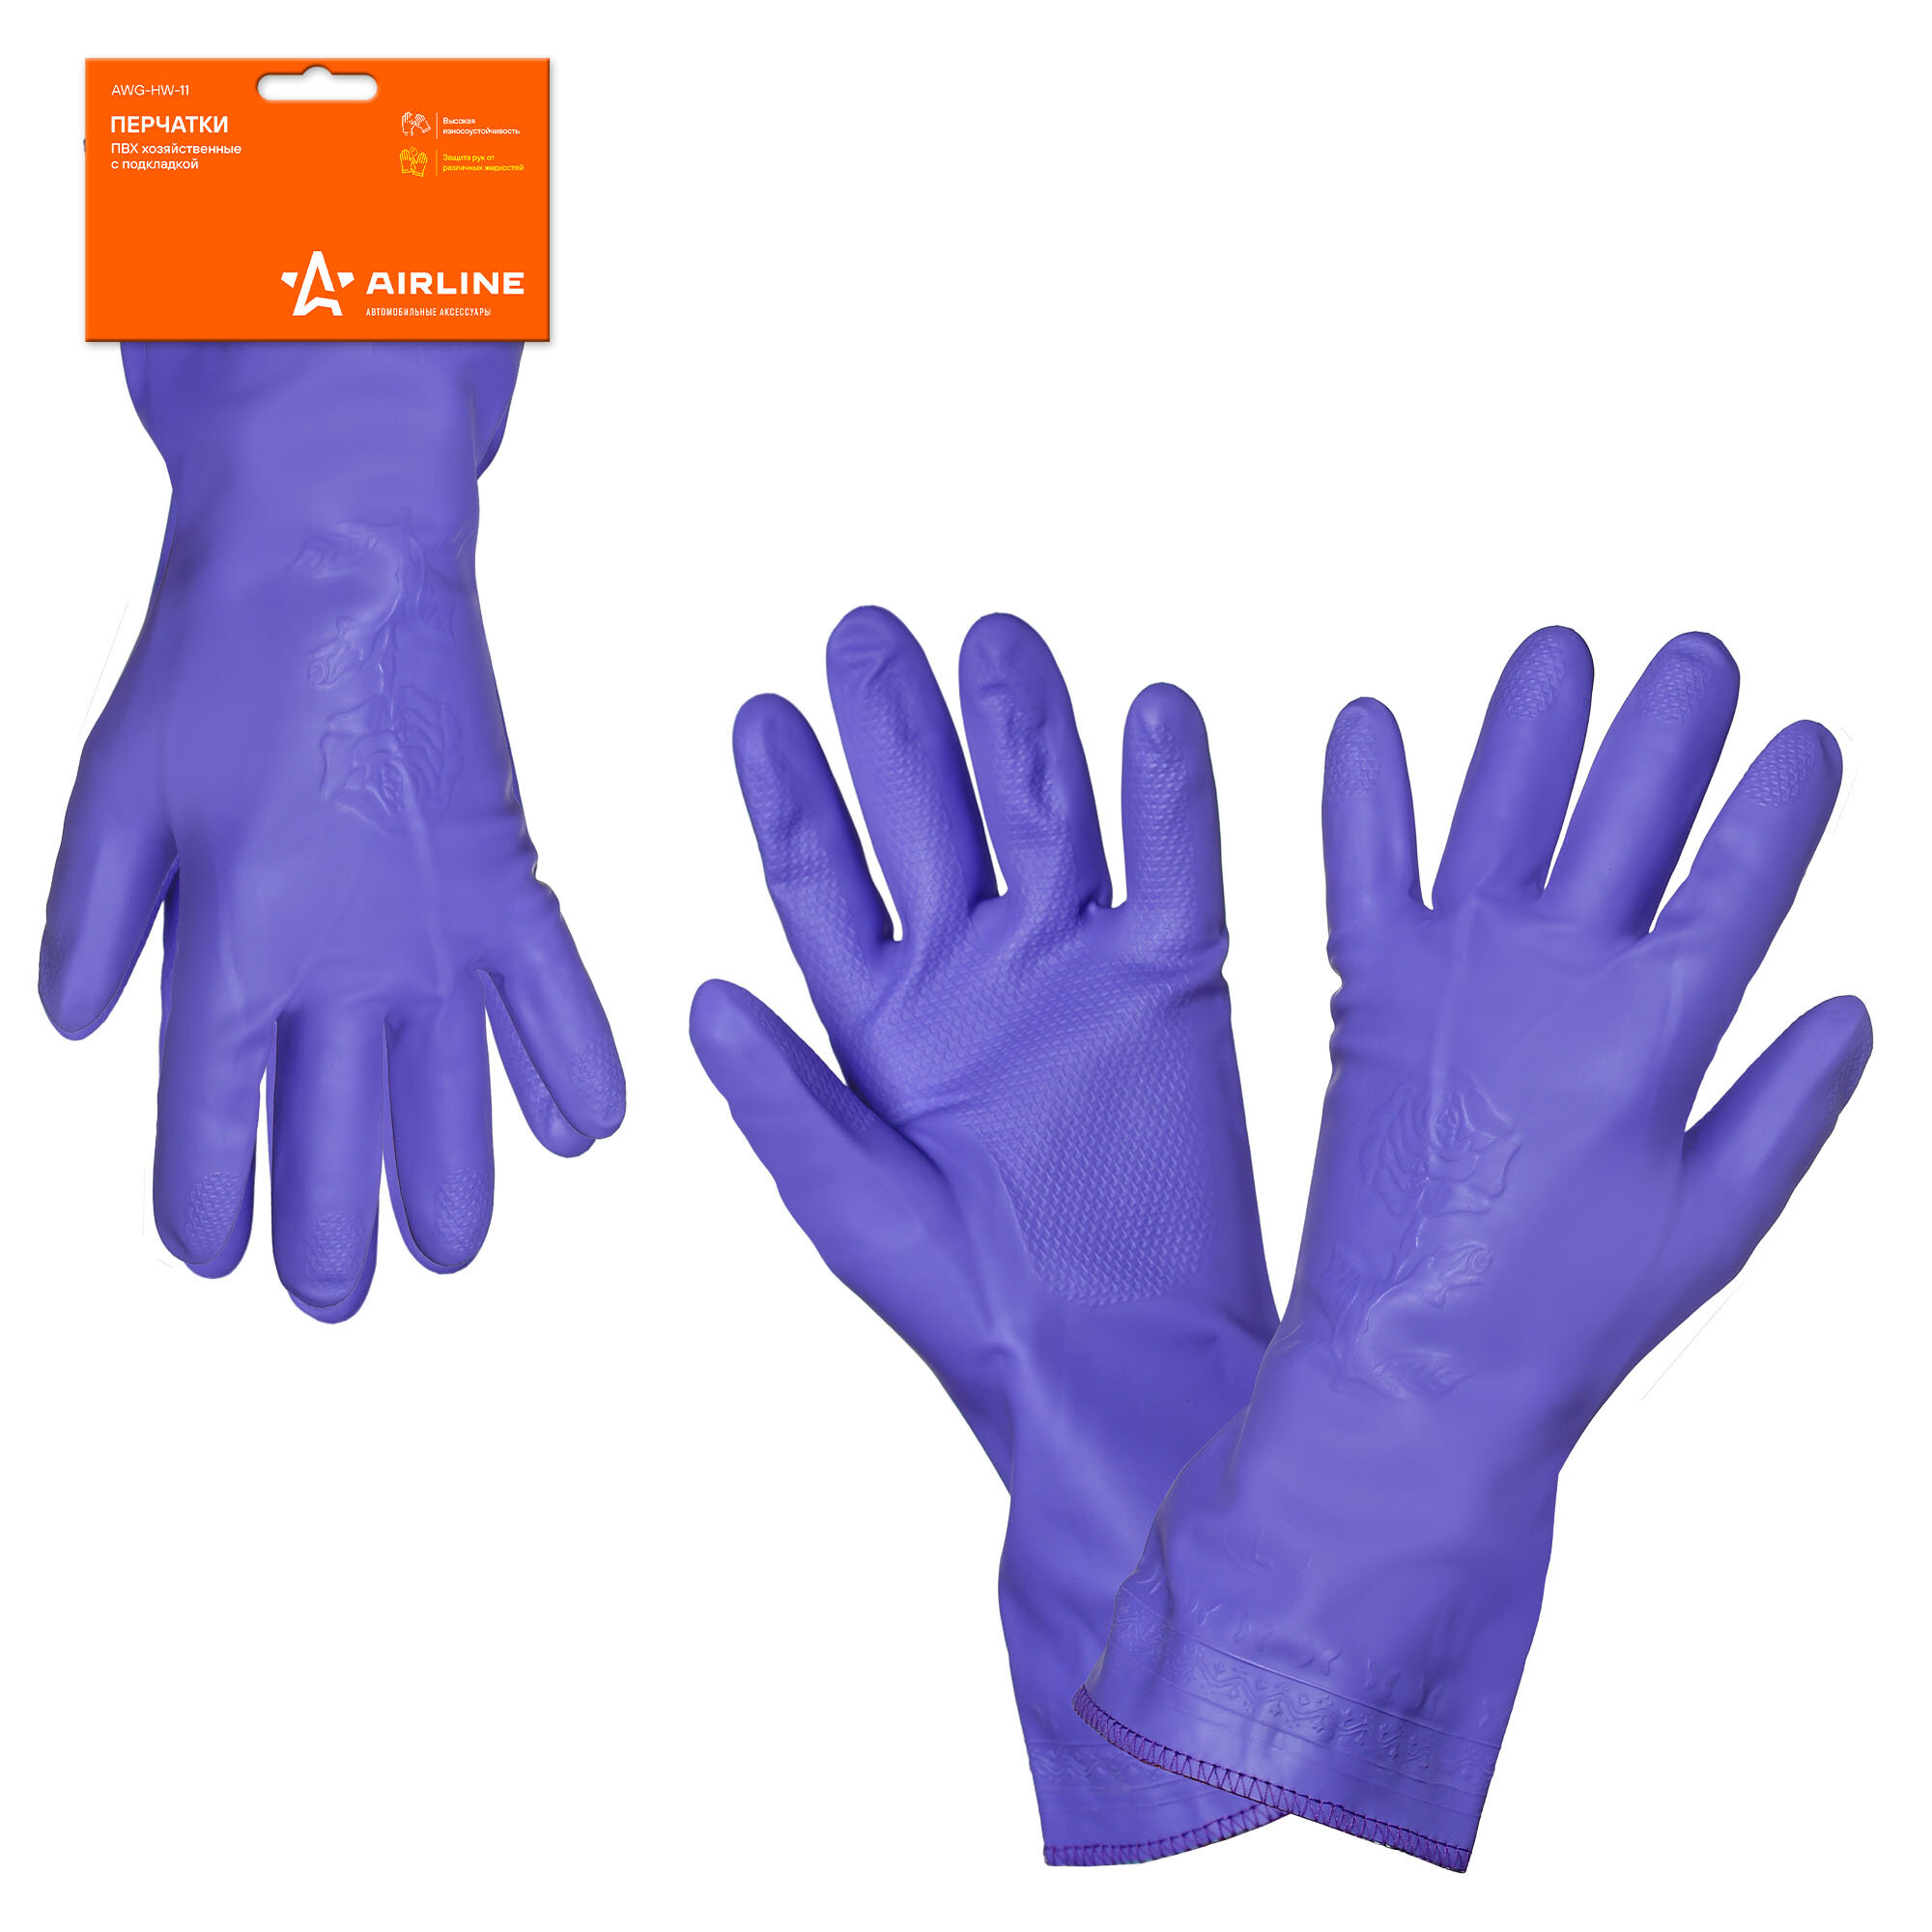 Перчатки ПВХ хозяйственные с подкладкой (L), фиолетовые, с подвесом AWG-HW-11 AIRLINE